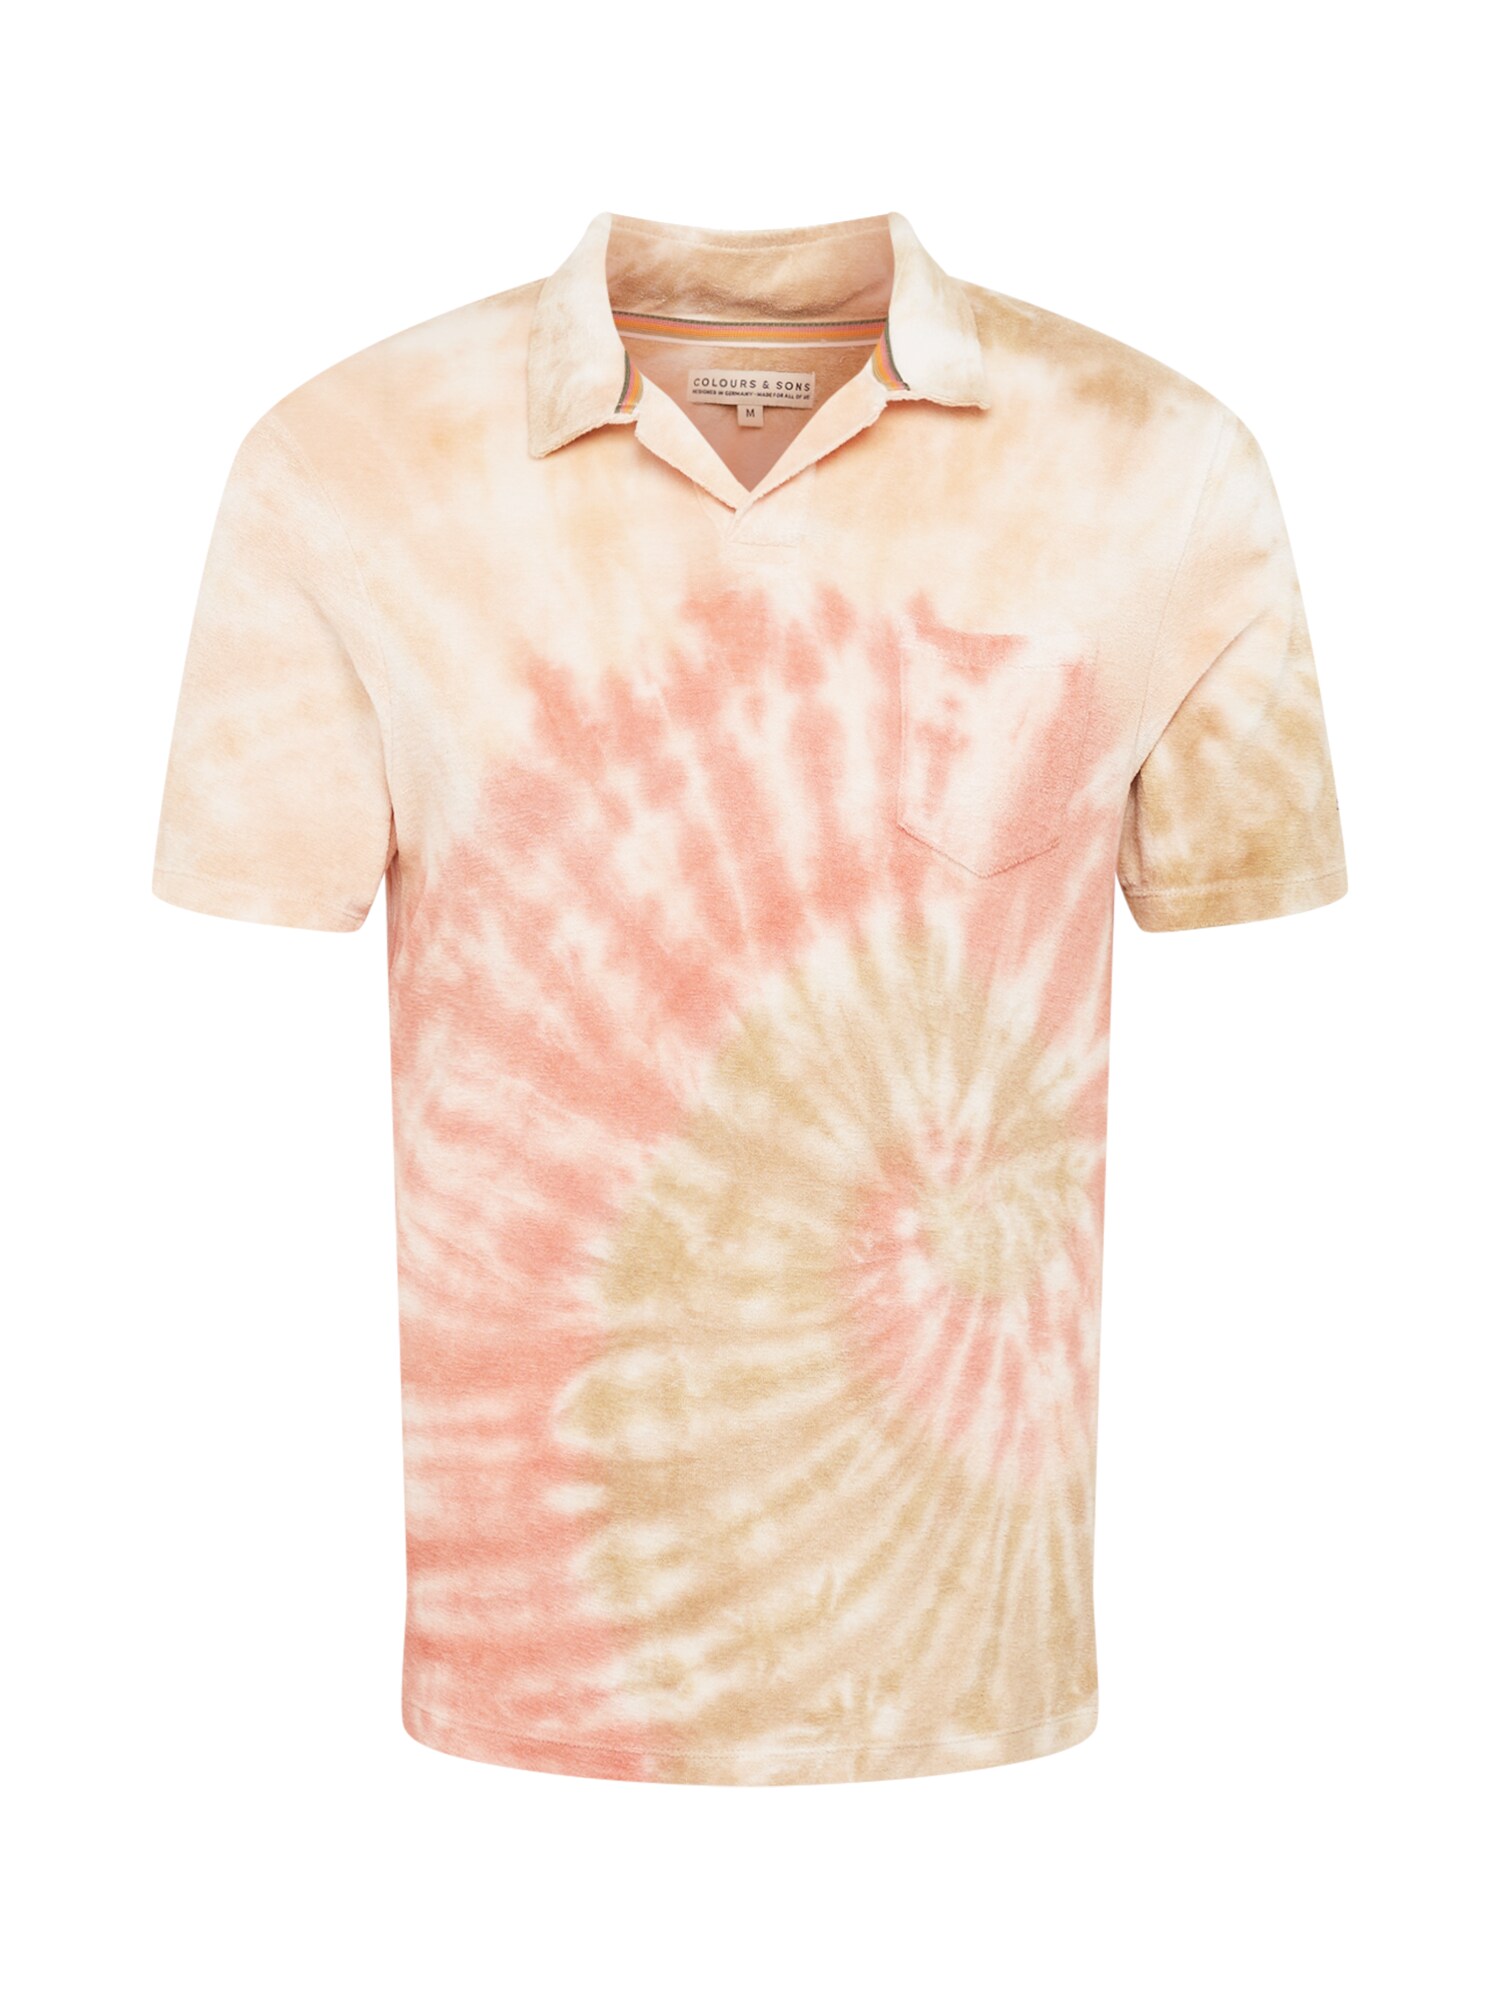 COLOURS & SONS Marškinėliai persikų spalva / lašišų spalva / zomšos spalva / kremo